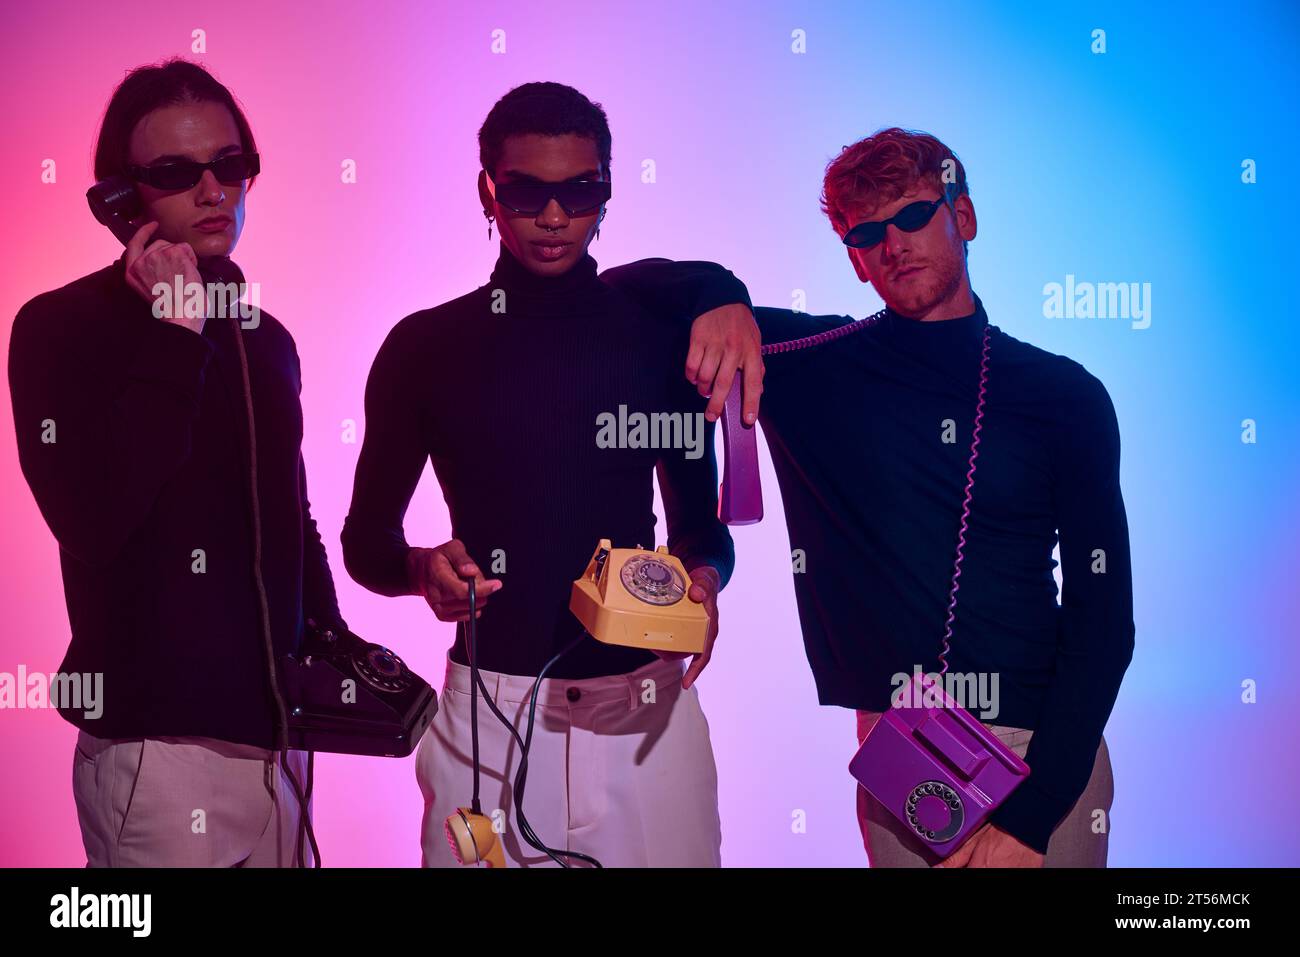 trois jeunes hommes en tenues noires tenant des téléphones fixes portant des lunettes de soleil, concept de mode Banque D'Images